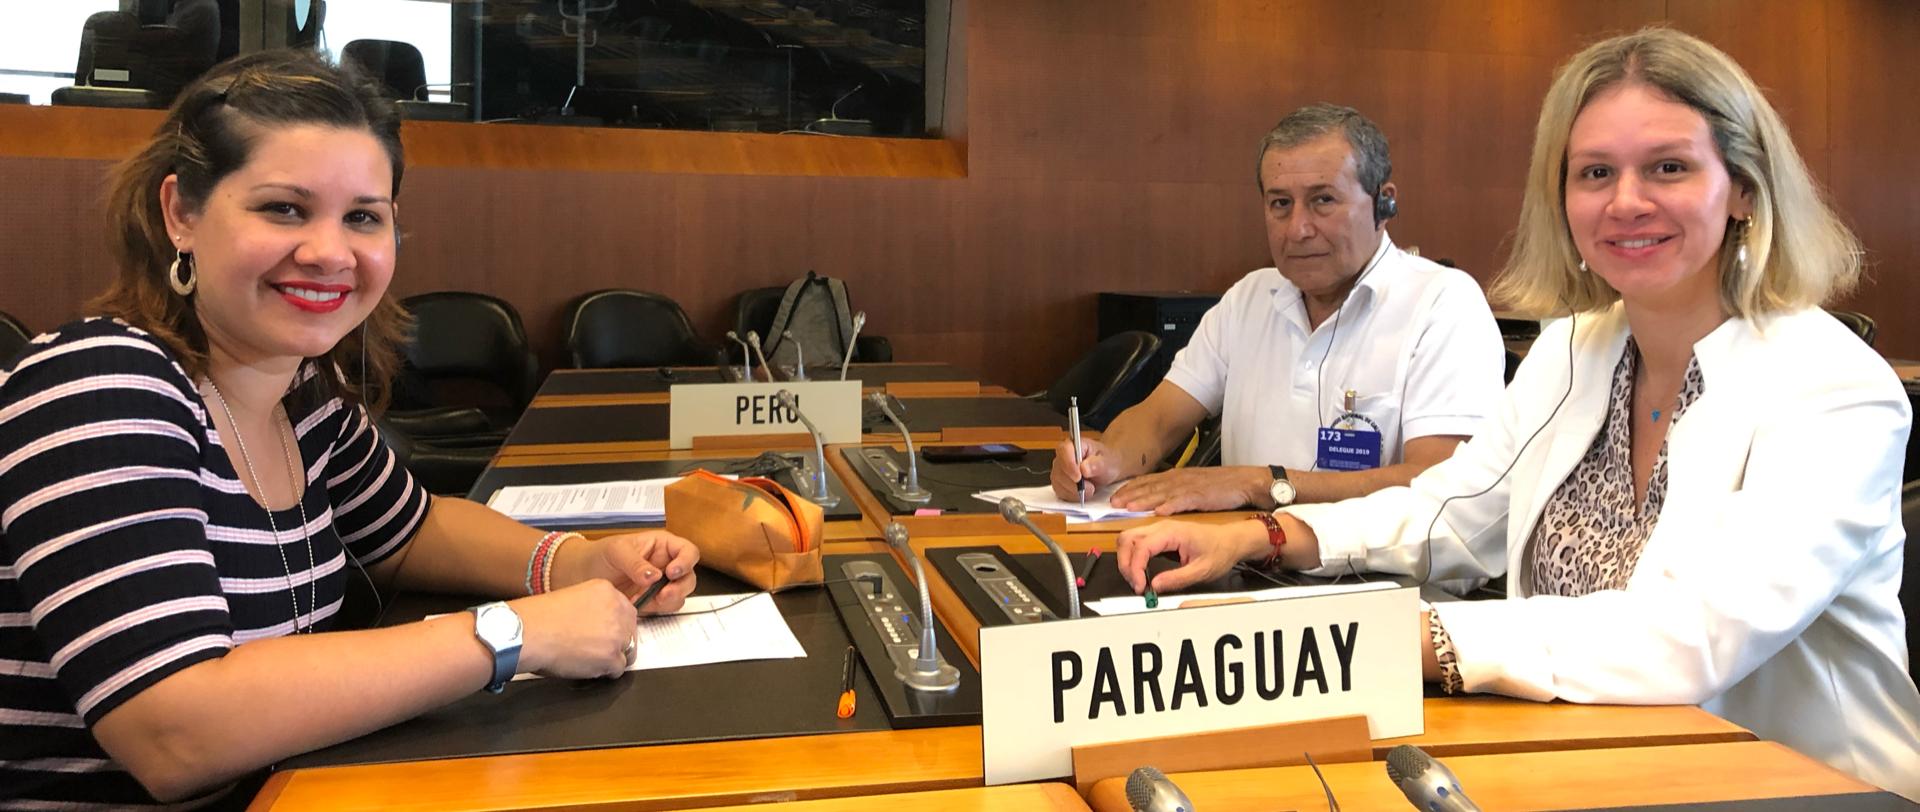 Delegación paraguaya participa en reunión del Comité de Medidas Sanitarias y Fitosanitarias de la OMC